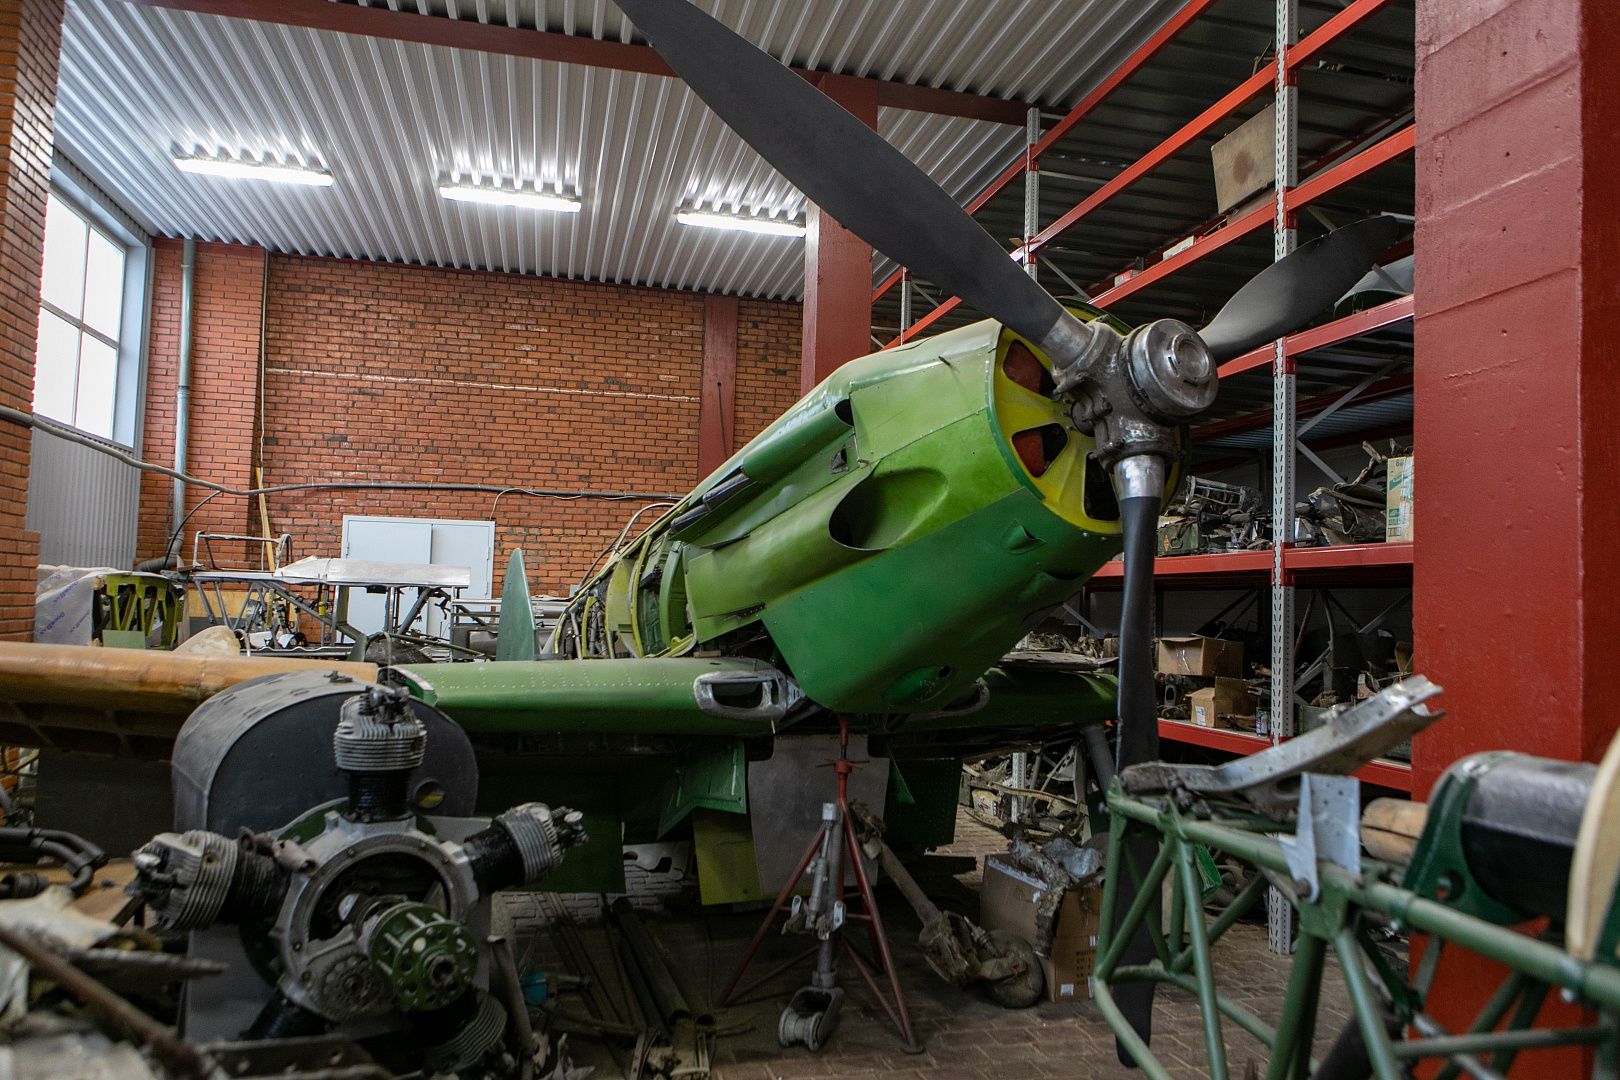 Музей «Битва за Ленинград» при поддержке холдинга «Бронка Групп» приступил к восстановлению штурмовика ИЛ-2 и истребителя МИГ-3  - фото 1